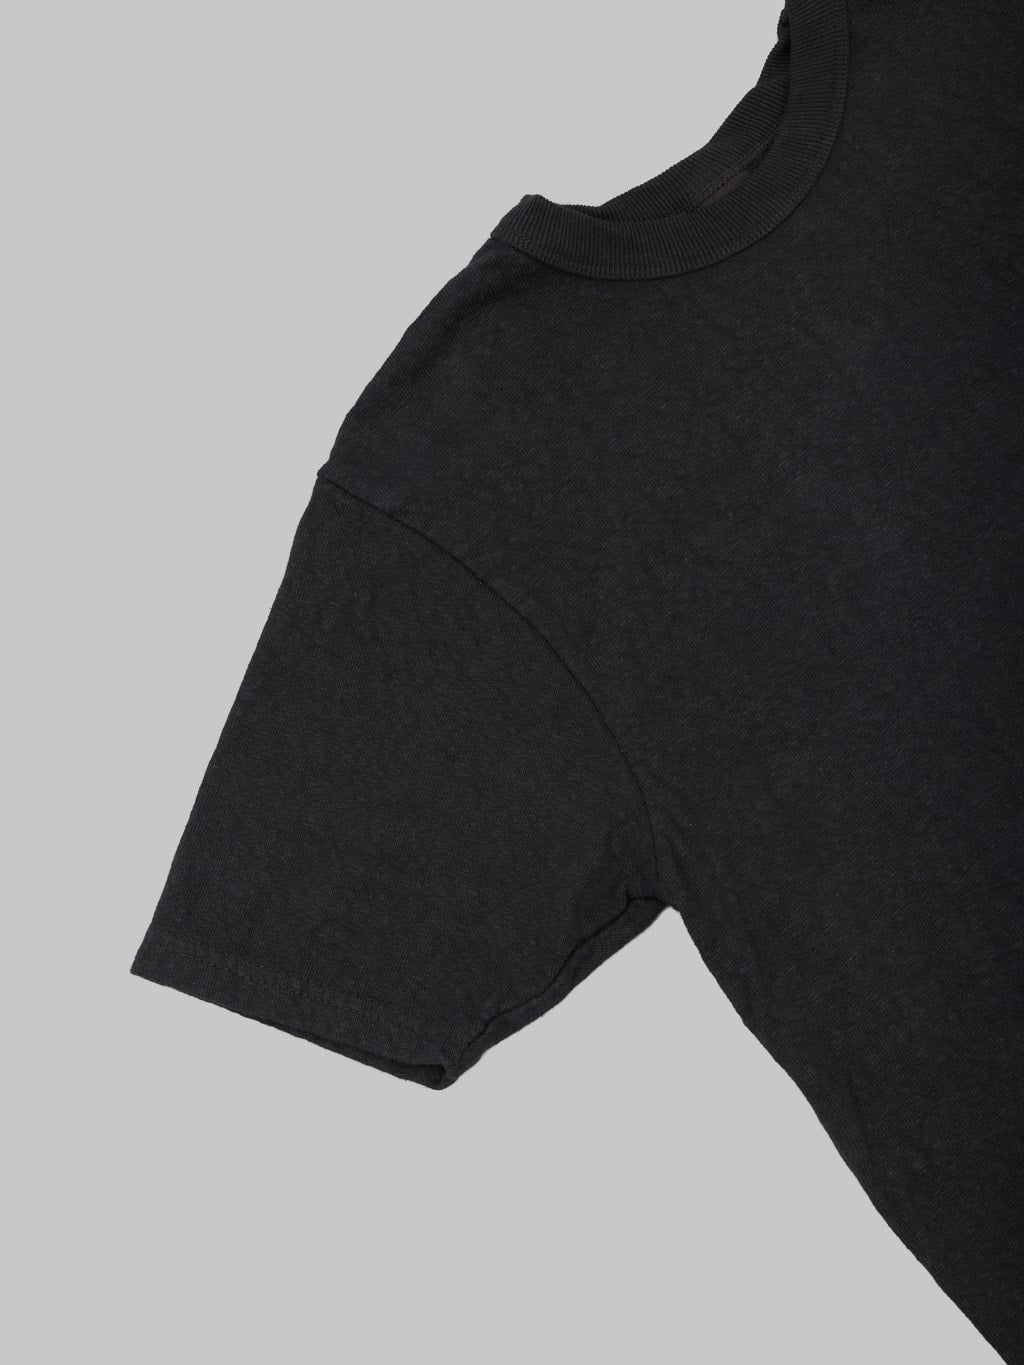 UES No 8 Slub Nep Short Sleeve Tshirt Black 100 cotton